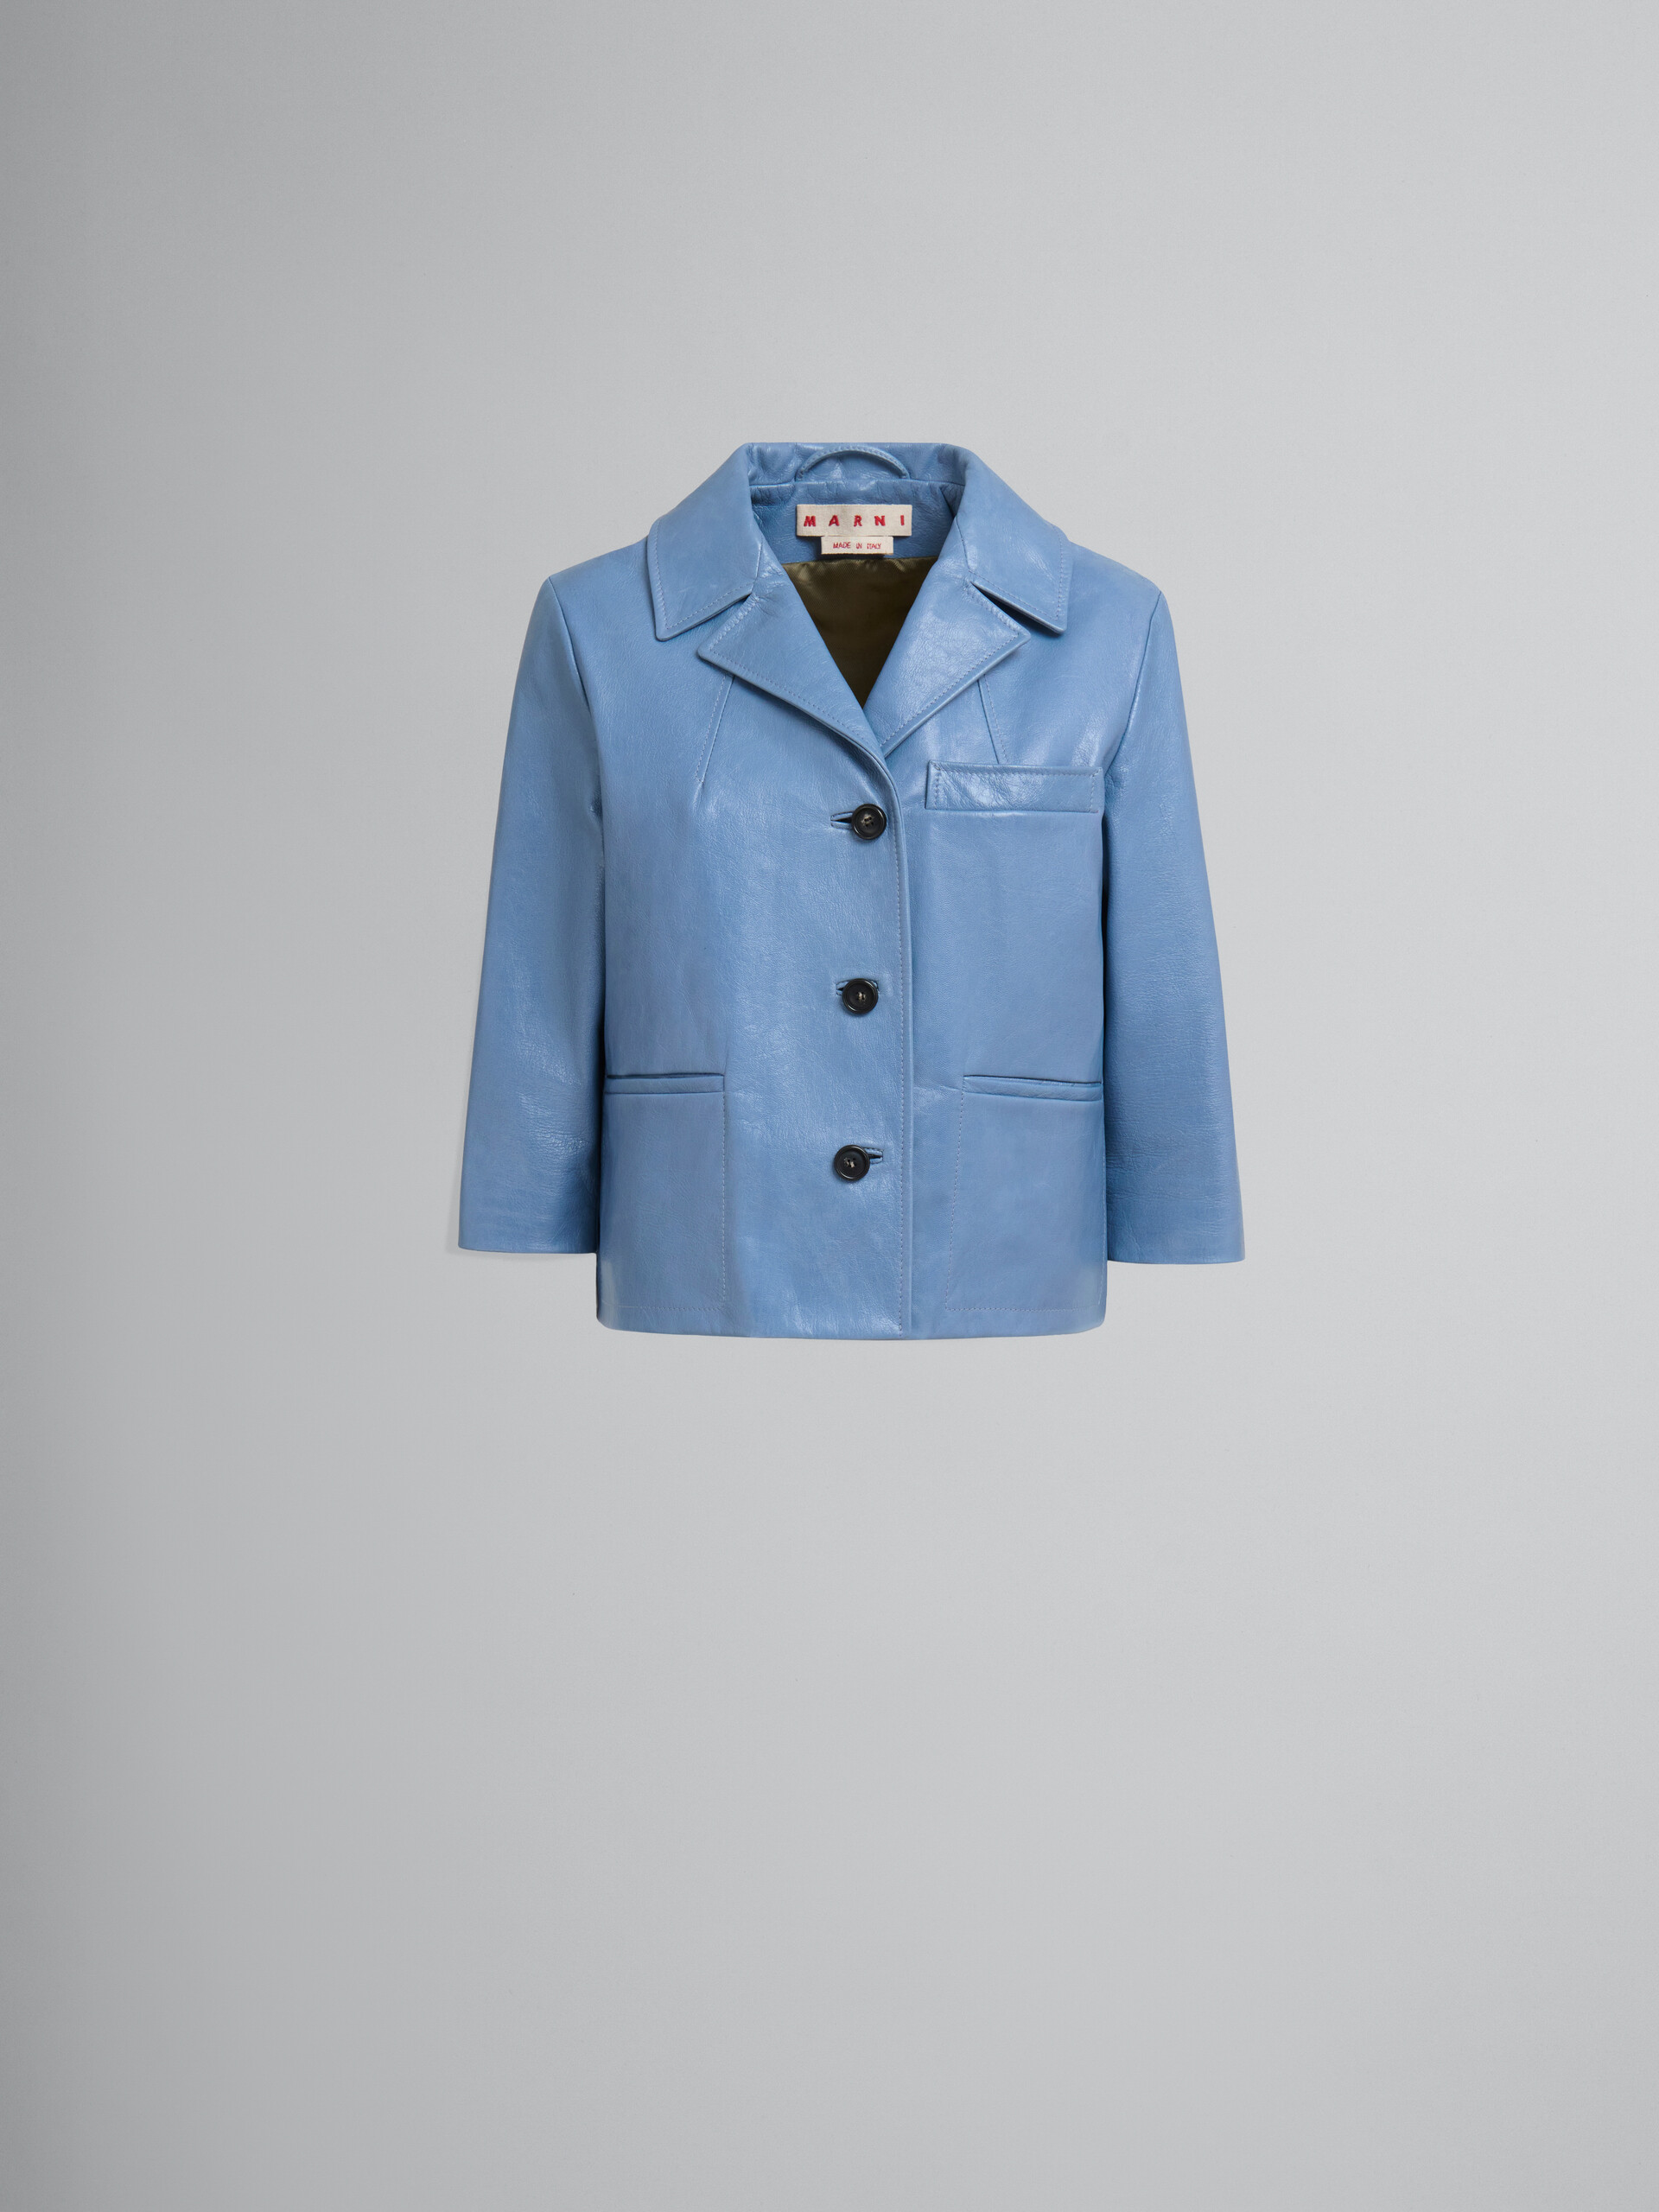 Blue shiny leather jacket - Jackets - Image 1